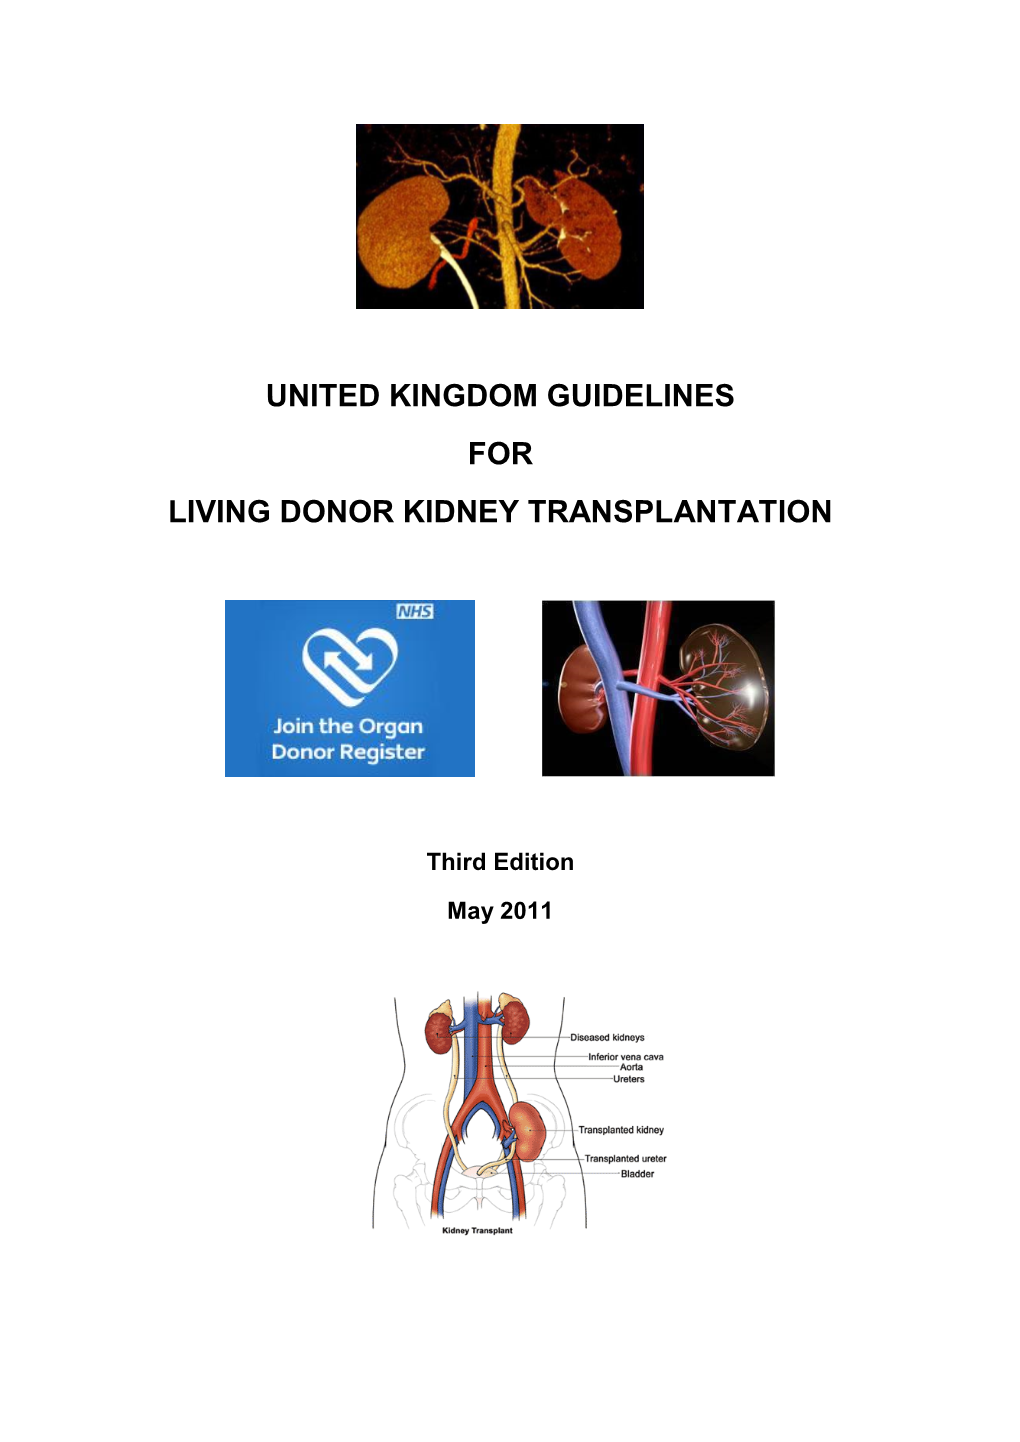 United Kingdom Guidelines for Living Donor Kidney Transplantation